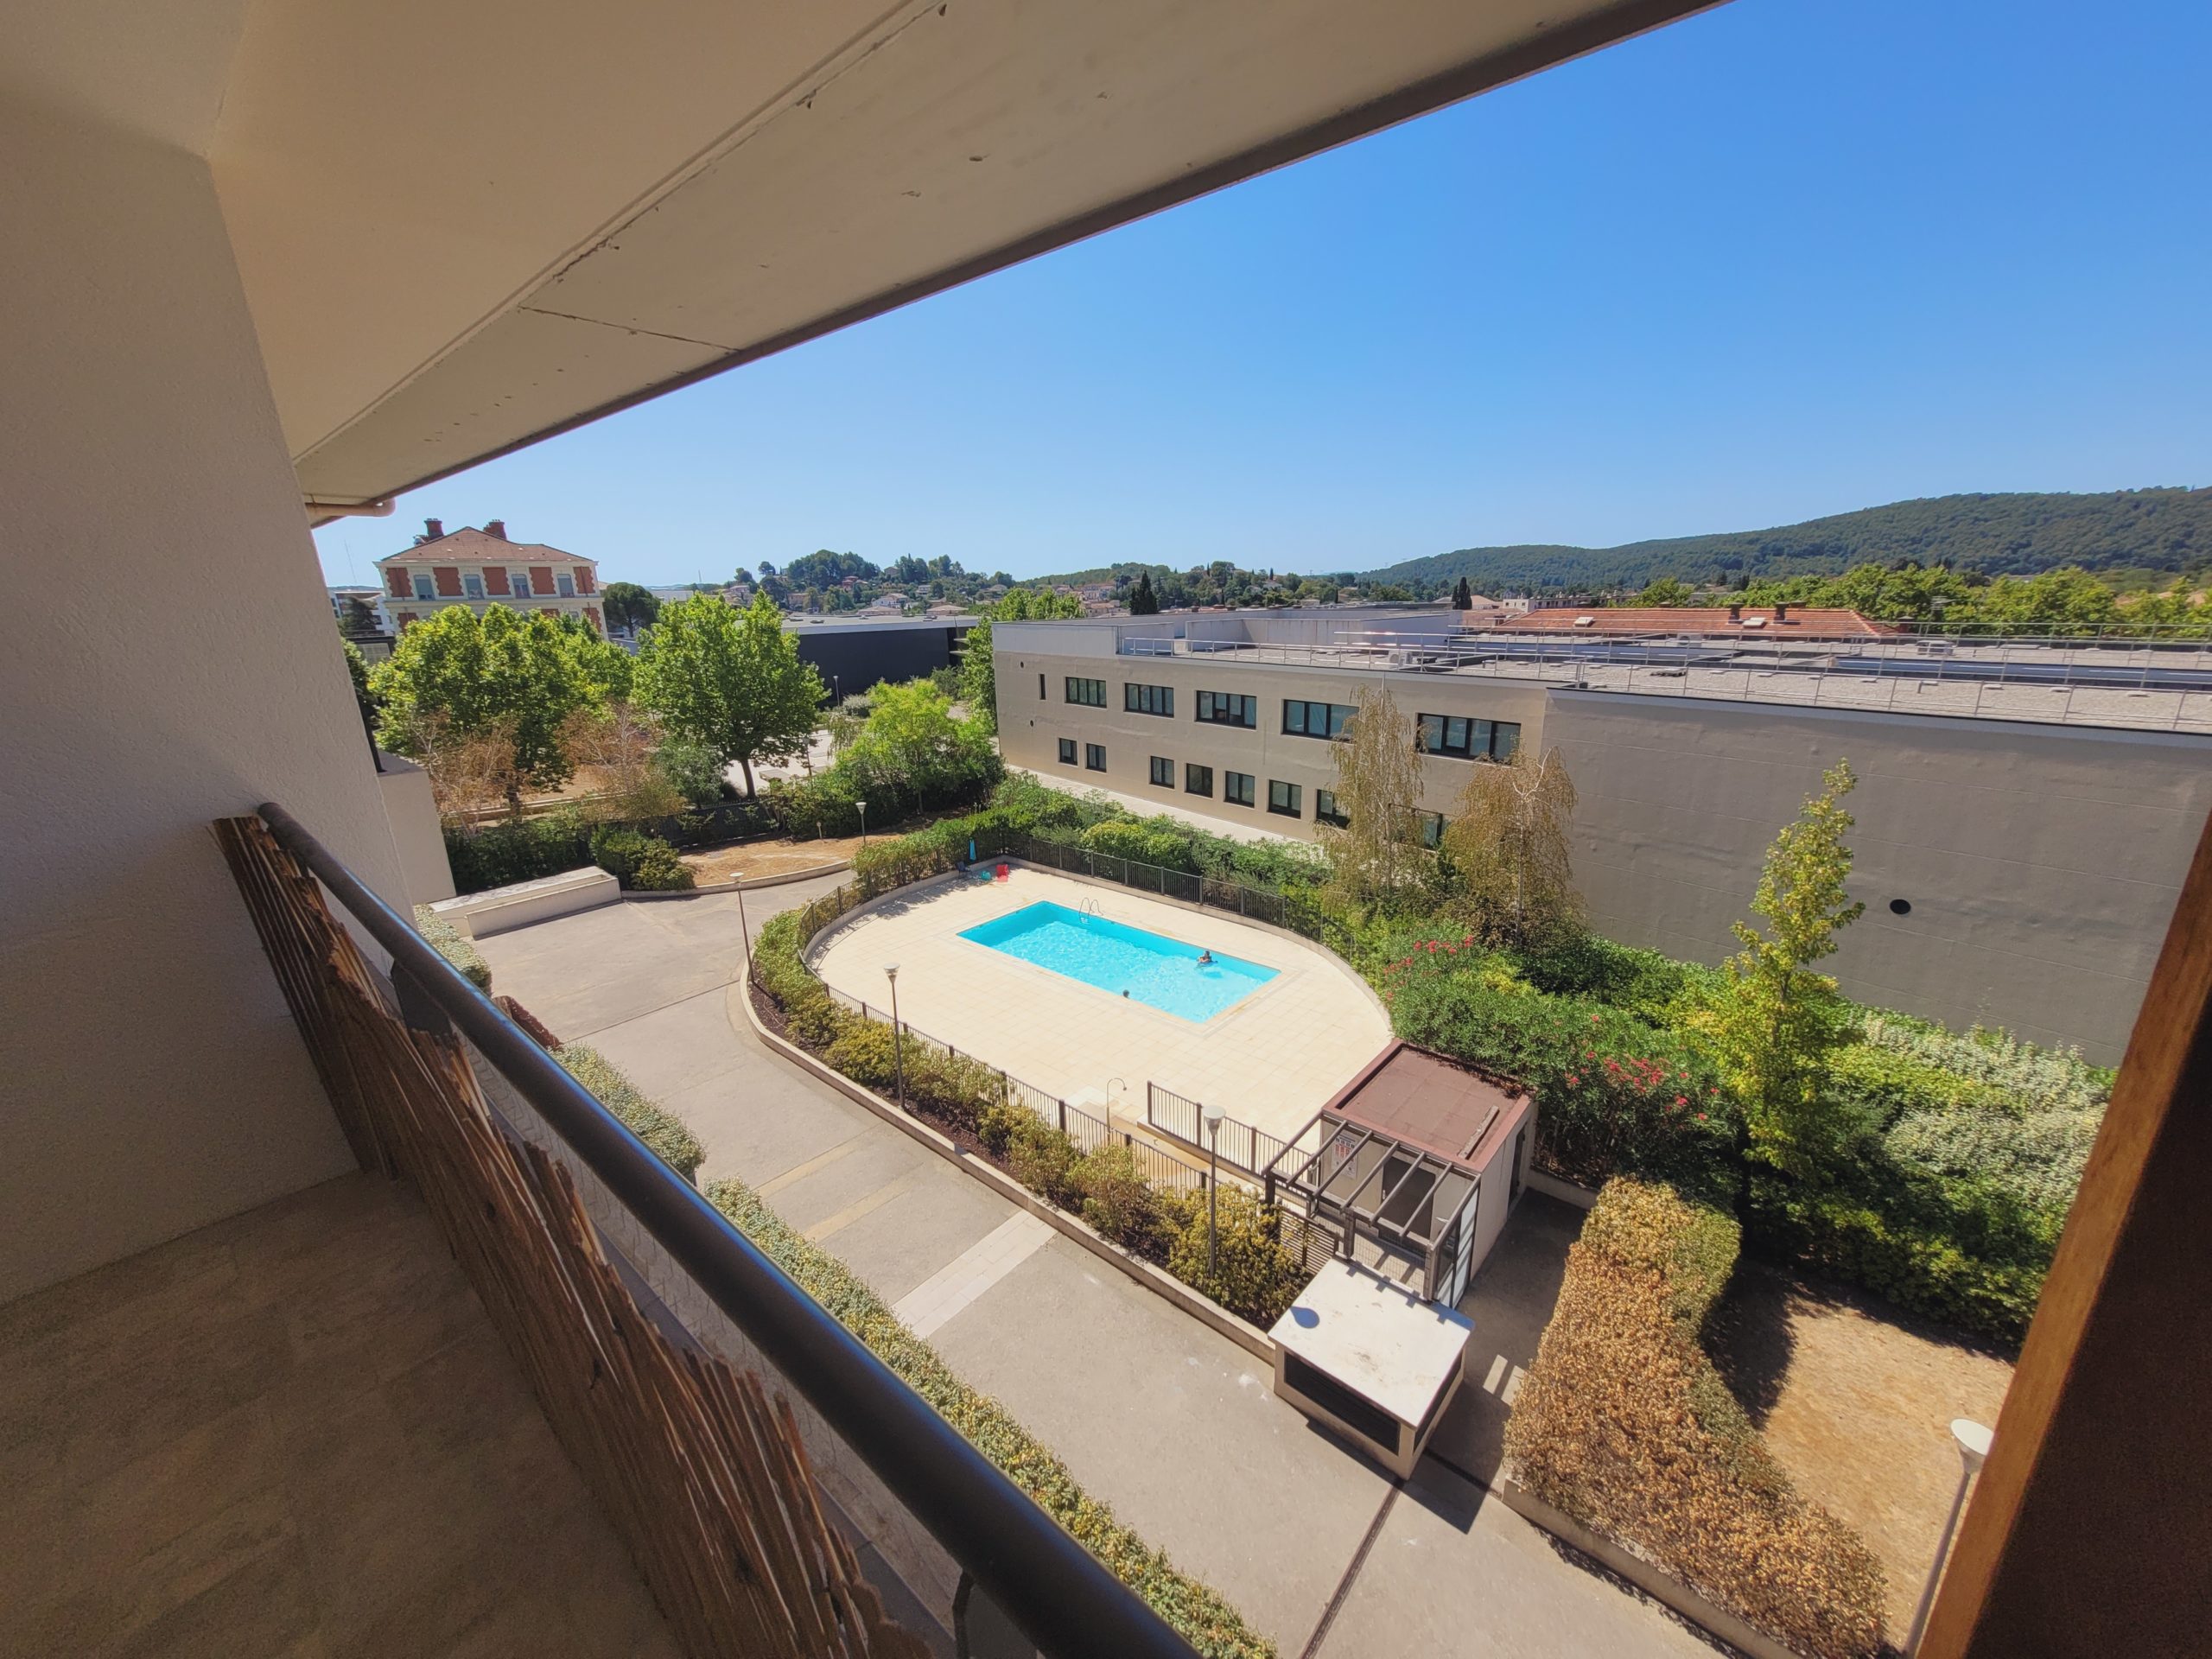 Appartement 64.05m² avec terrasse et garage – Draguignan